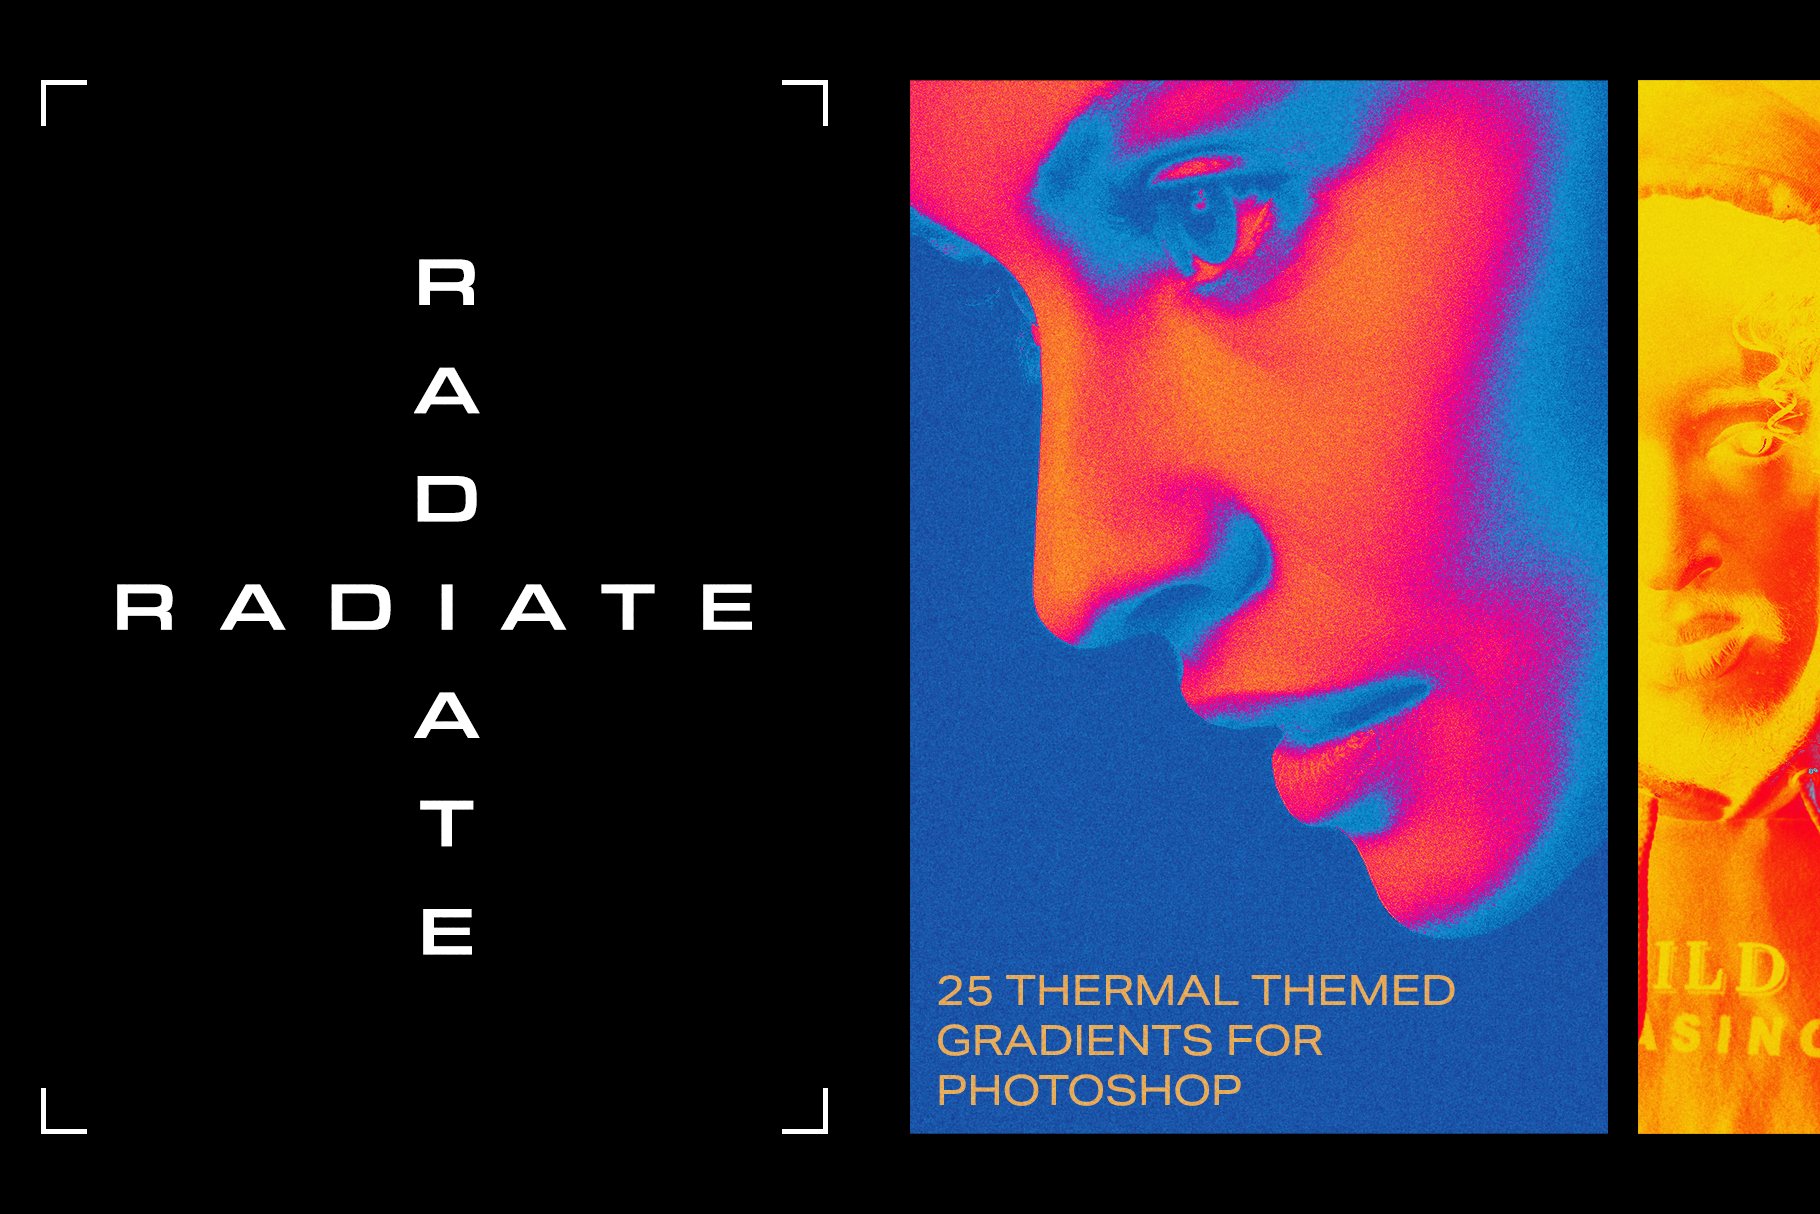 Radiate Photoshop Gradientscover image.